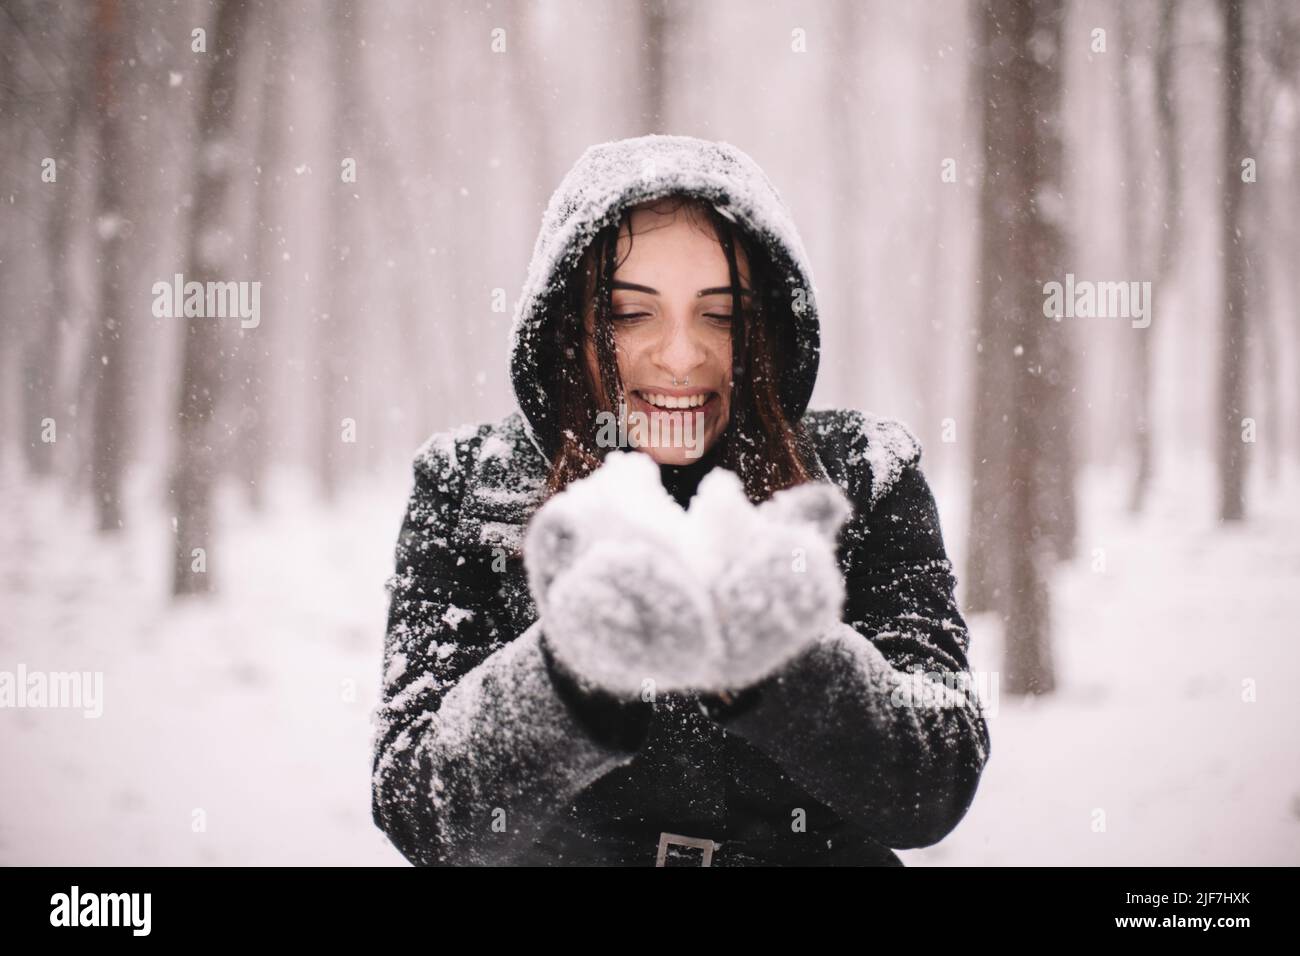 Glückliche lächelnde junge Frau, die während des Schneefalls im Winter Schnee hält Stockfoto